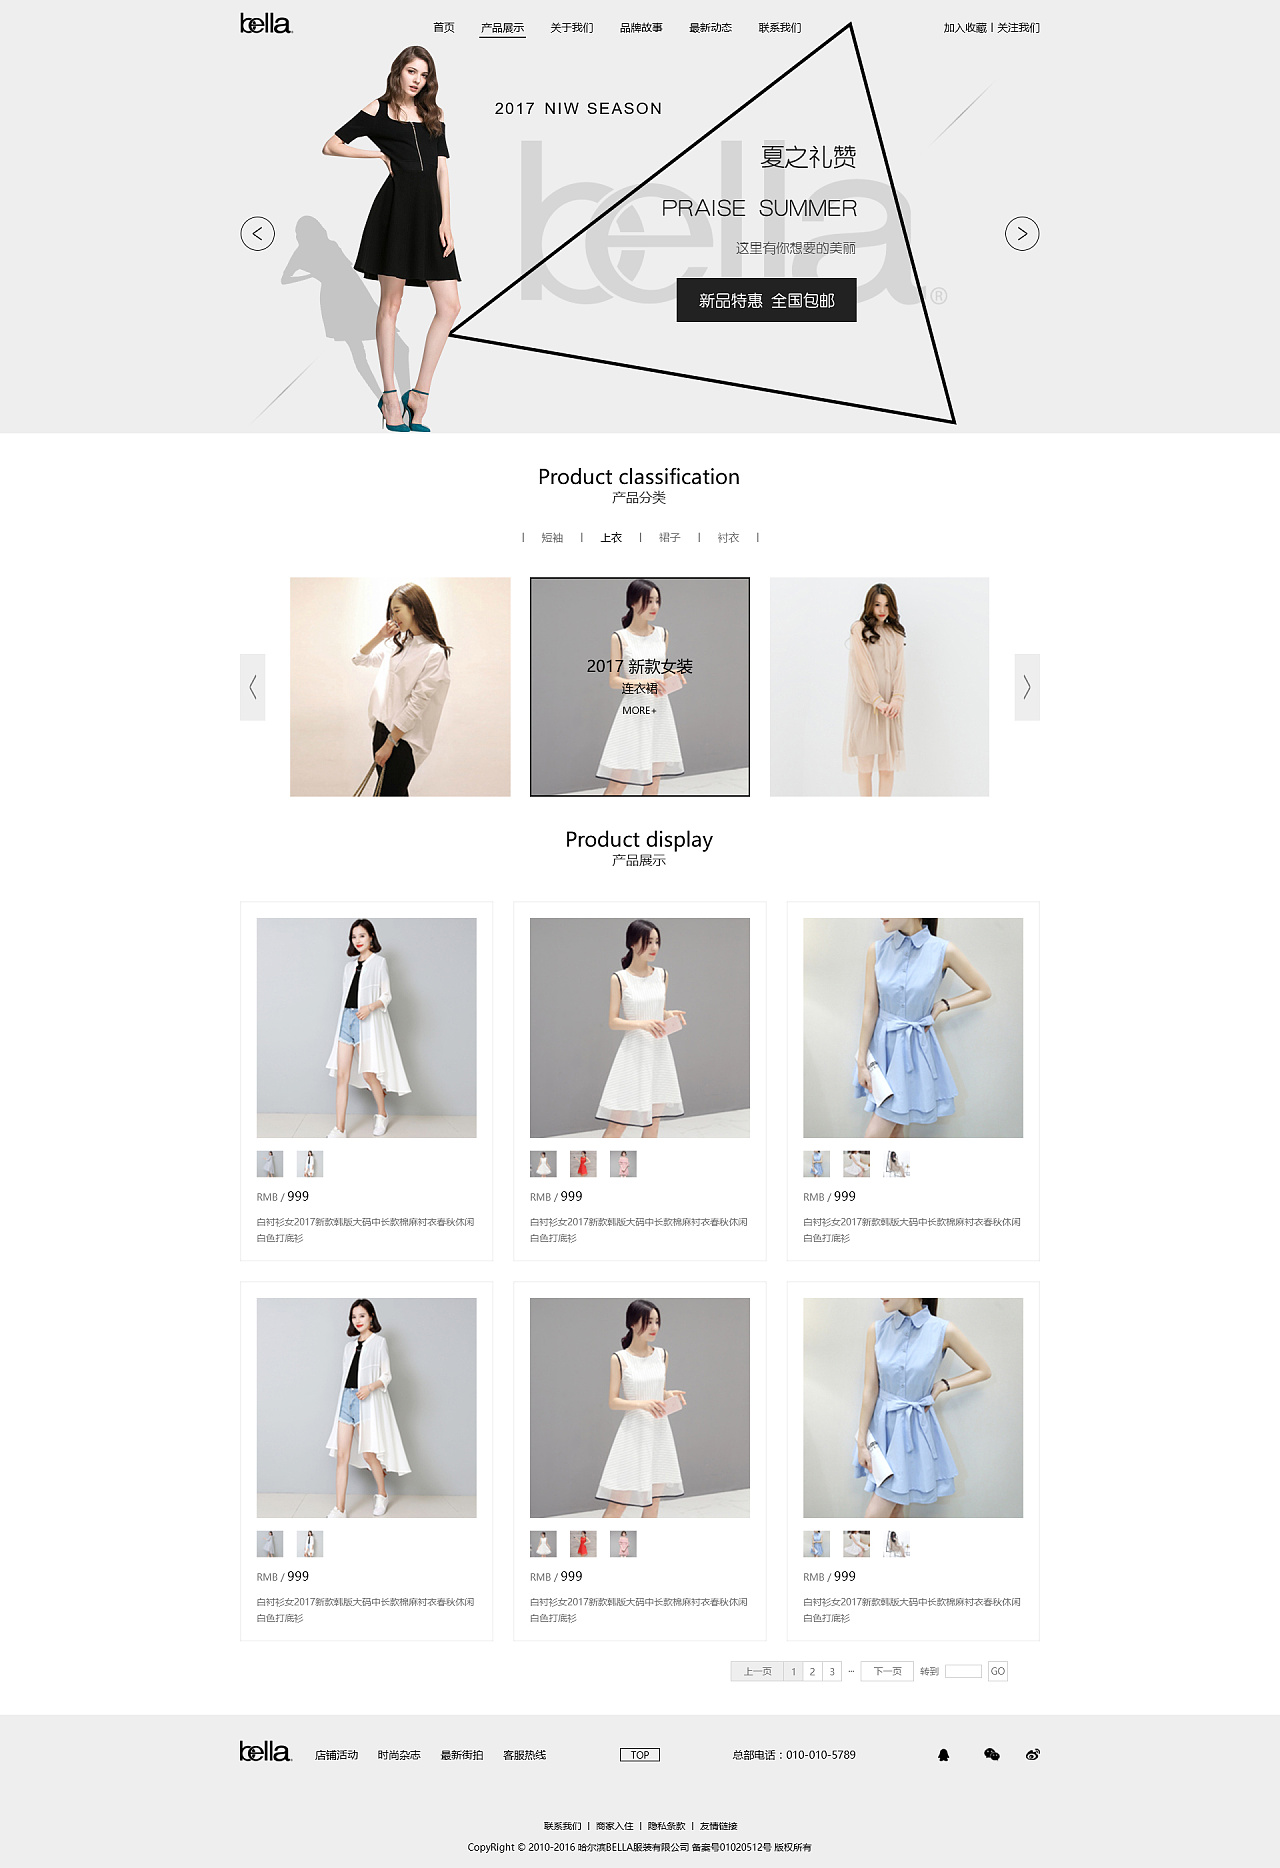 欧美网页风格的女性服装时尚购物商城网站html模板下载 - 二当家的